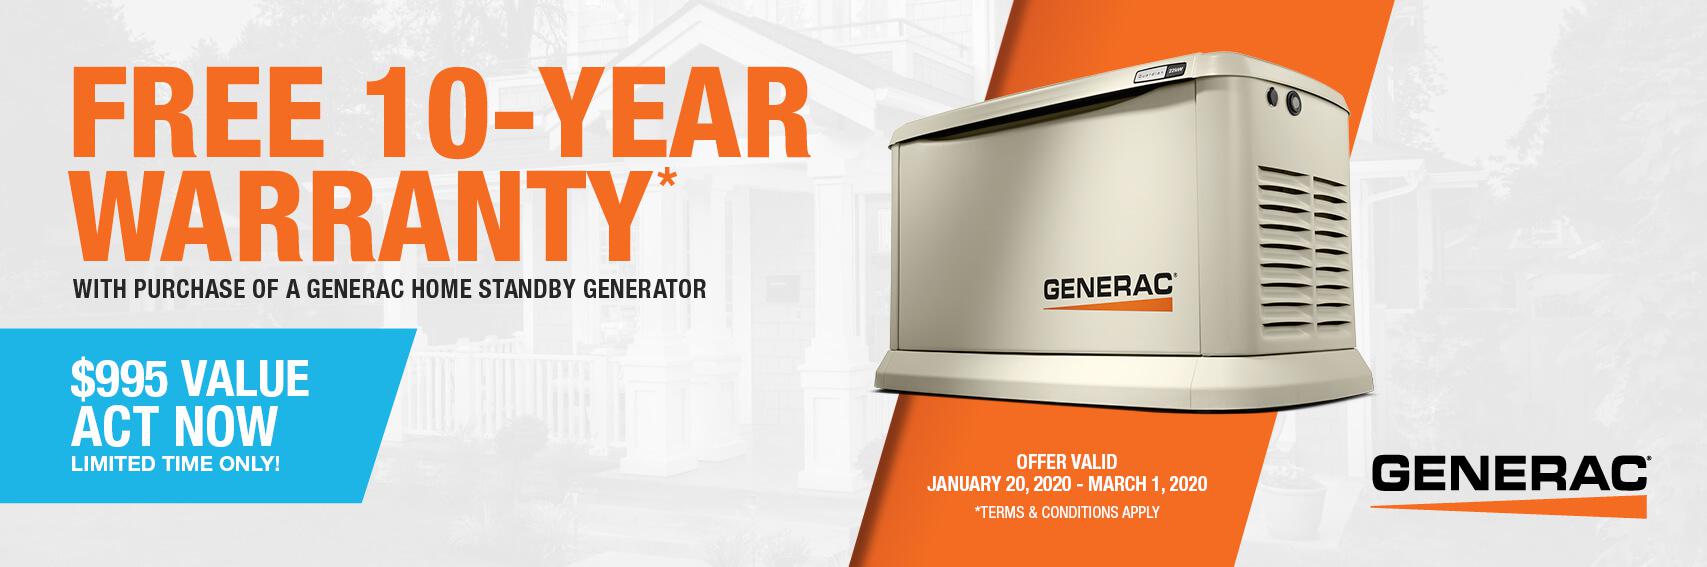 Homestandby Generator Deal | Warranty Offer | Generac Dealer | Lebanon, NJ